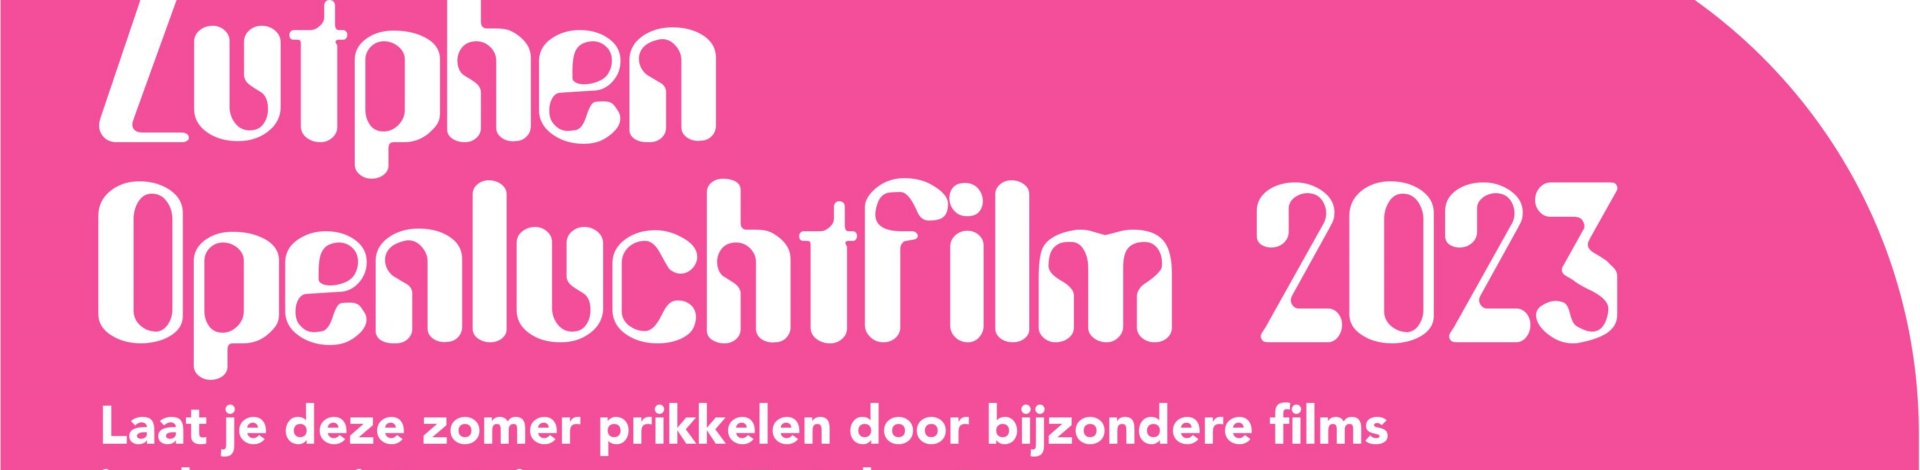 Zutphen Openluchtfilm 2023